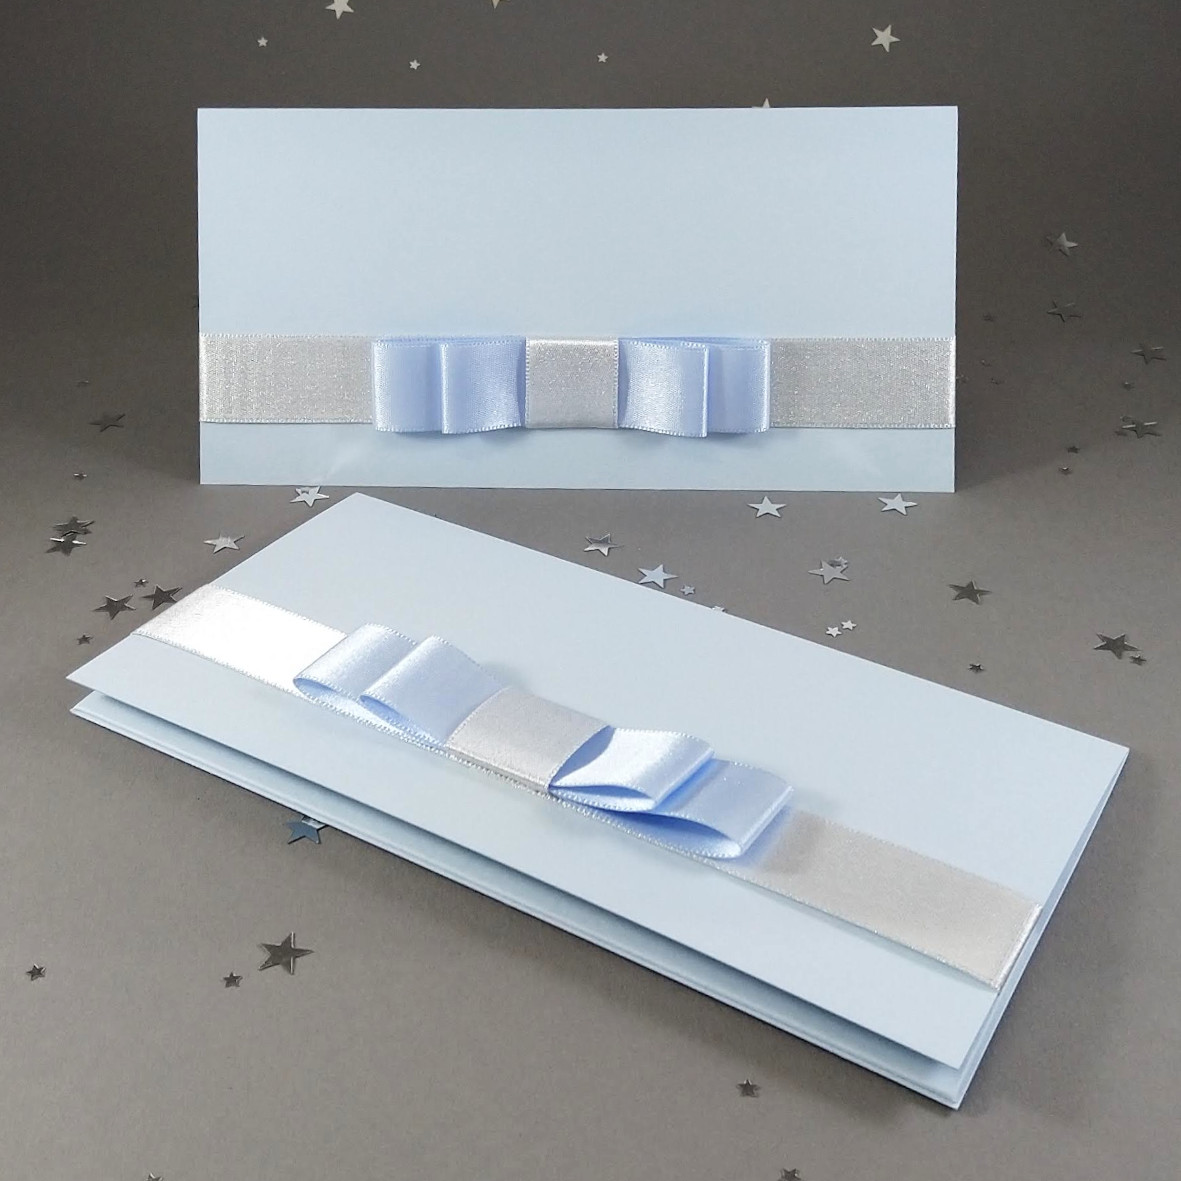 Dárková kapsa DL formátu z matného, mírně strukturovaného, světle modrého papíru, s aplikací z široké atlasové stuhy, celkový rozměr 206 × 106 mm.